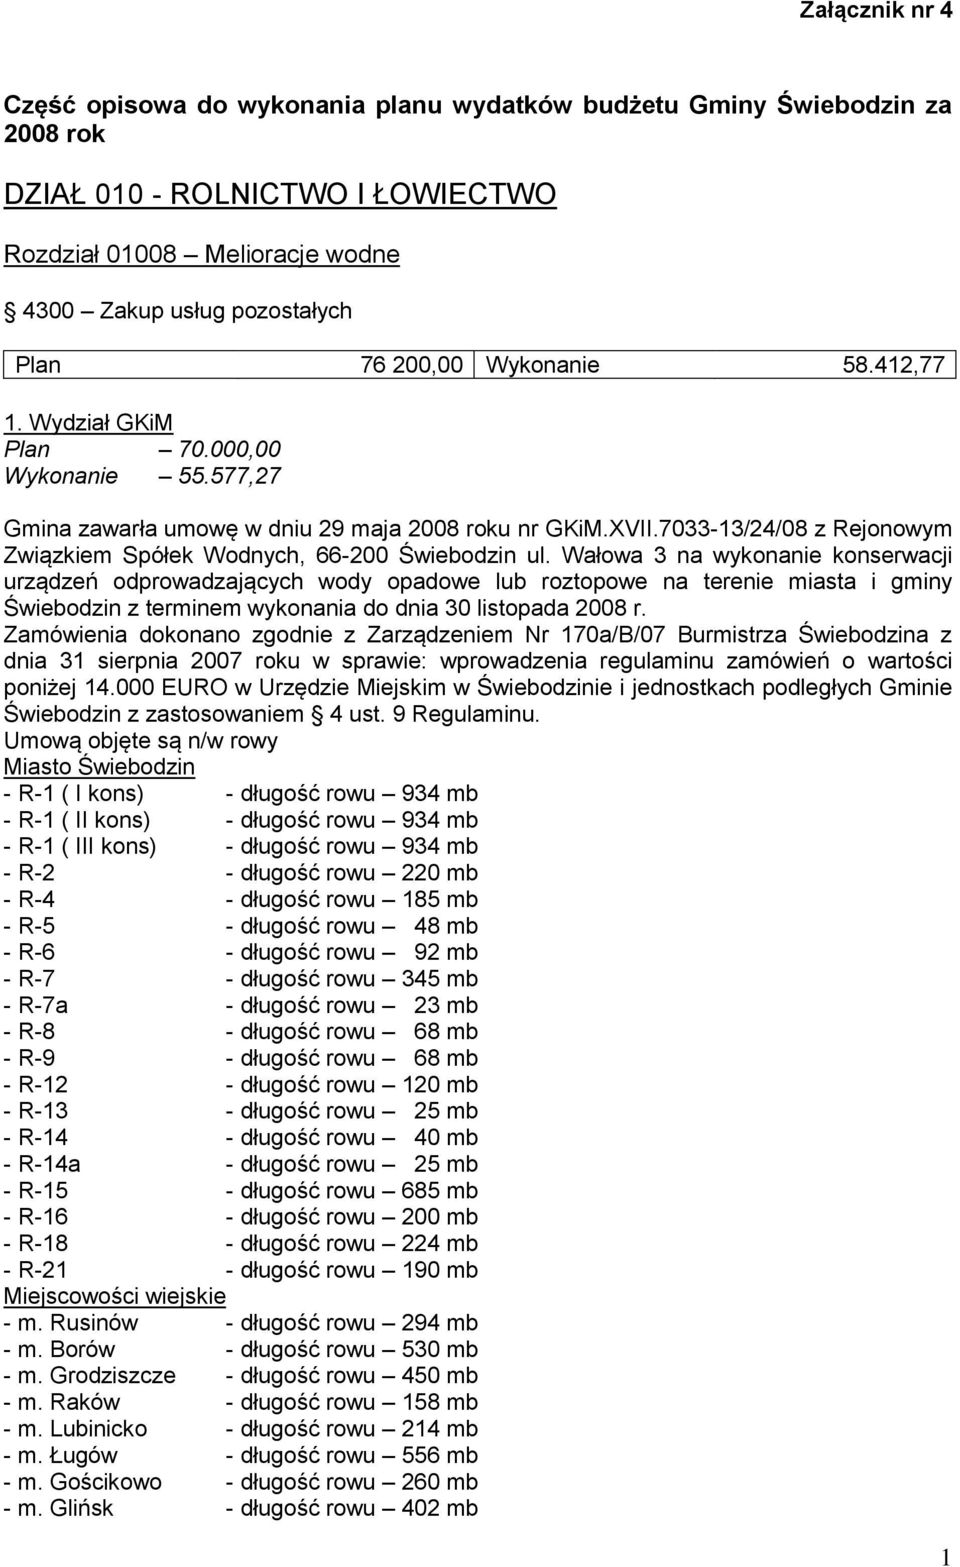 7033-13/24/08 z Rejonowym Związkiem Spółek Wodnych, 66-200 Świebodzin ul.